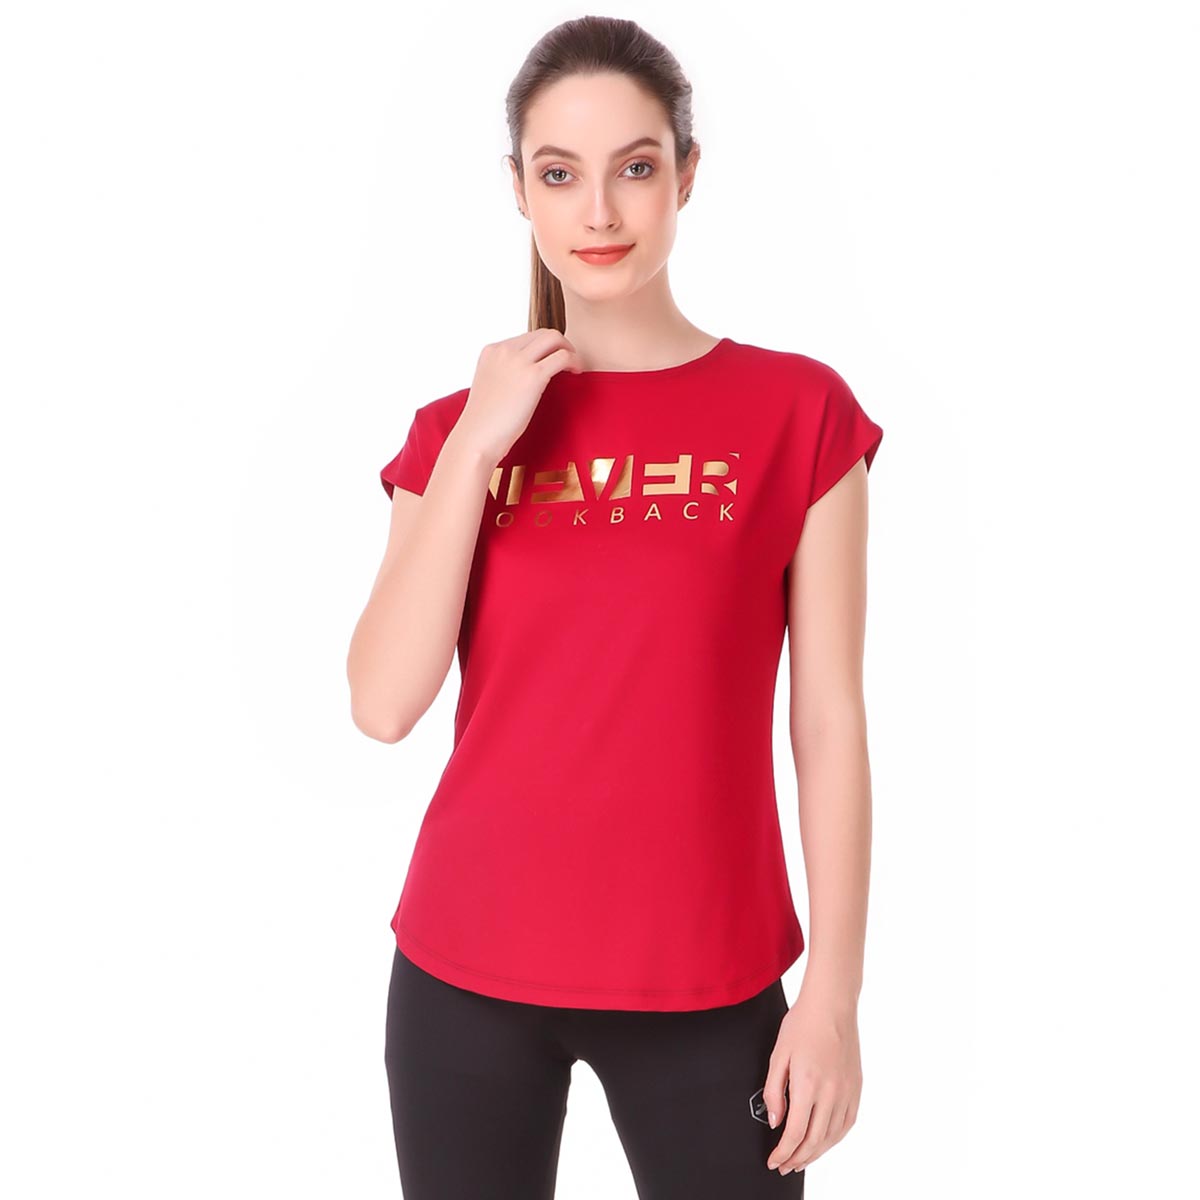 Performance Tshirt For Women (NLB Red)